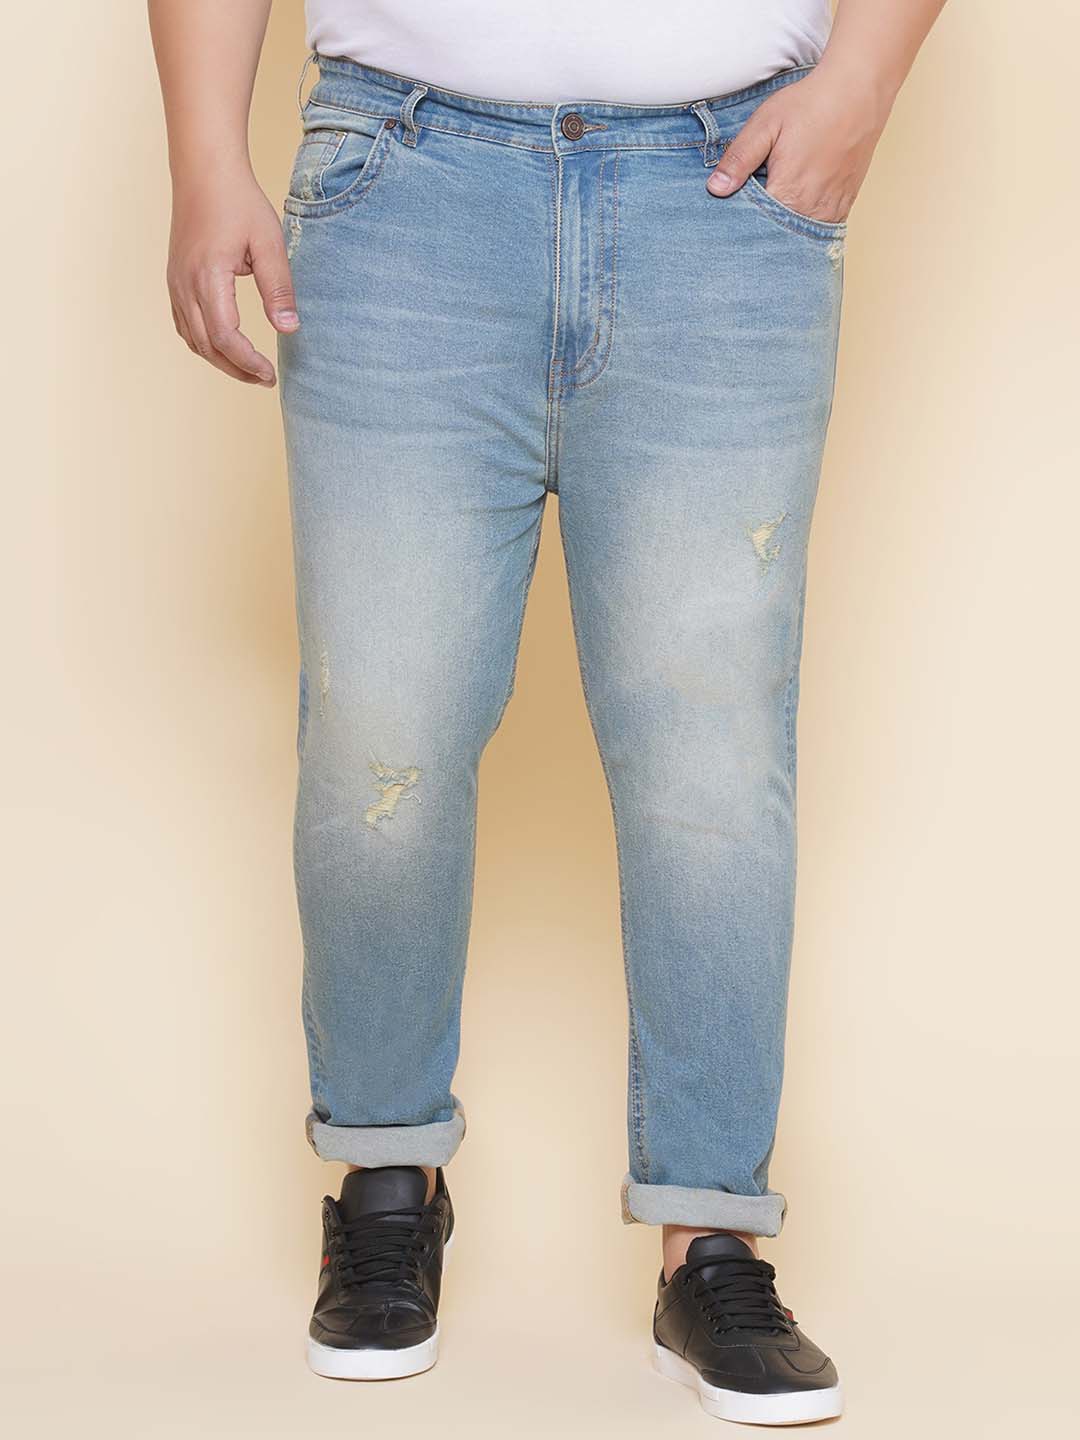 bottomwear/jeans/EJPJ25141/ejpj25141-1.jpg